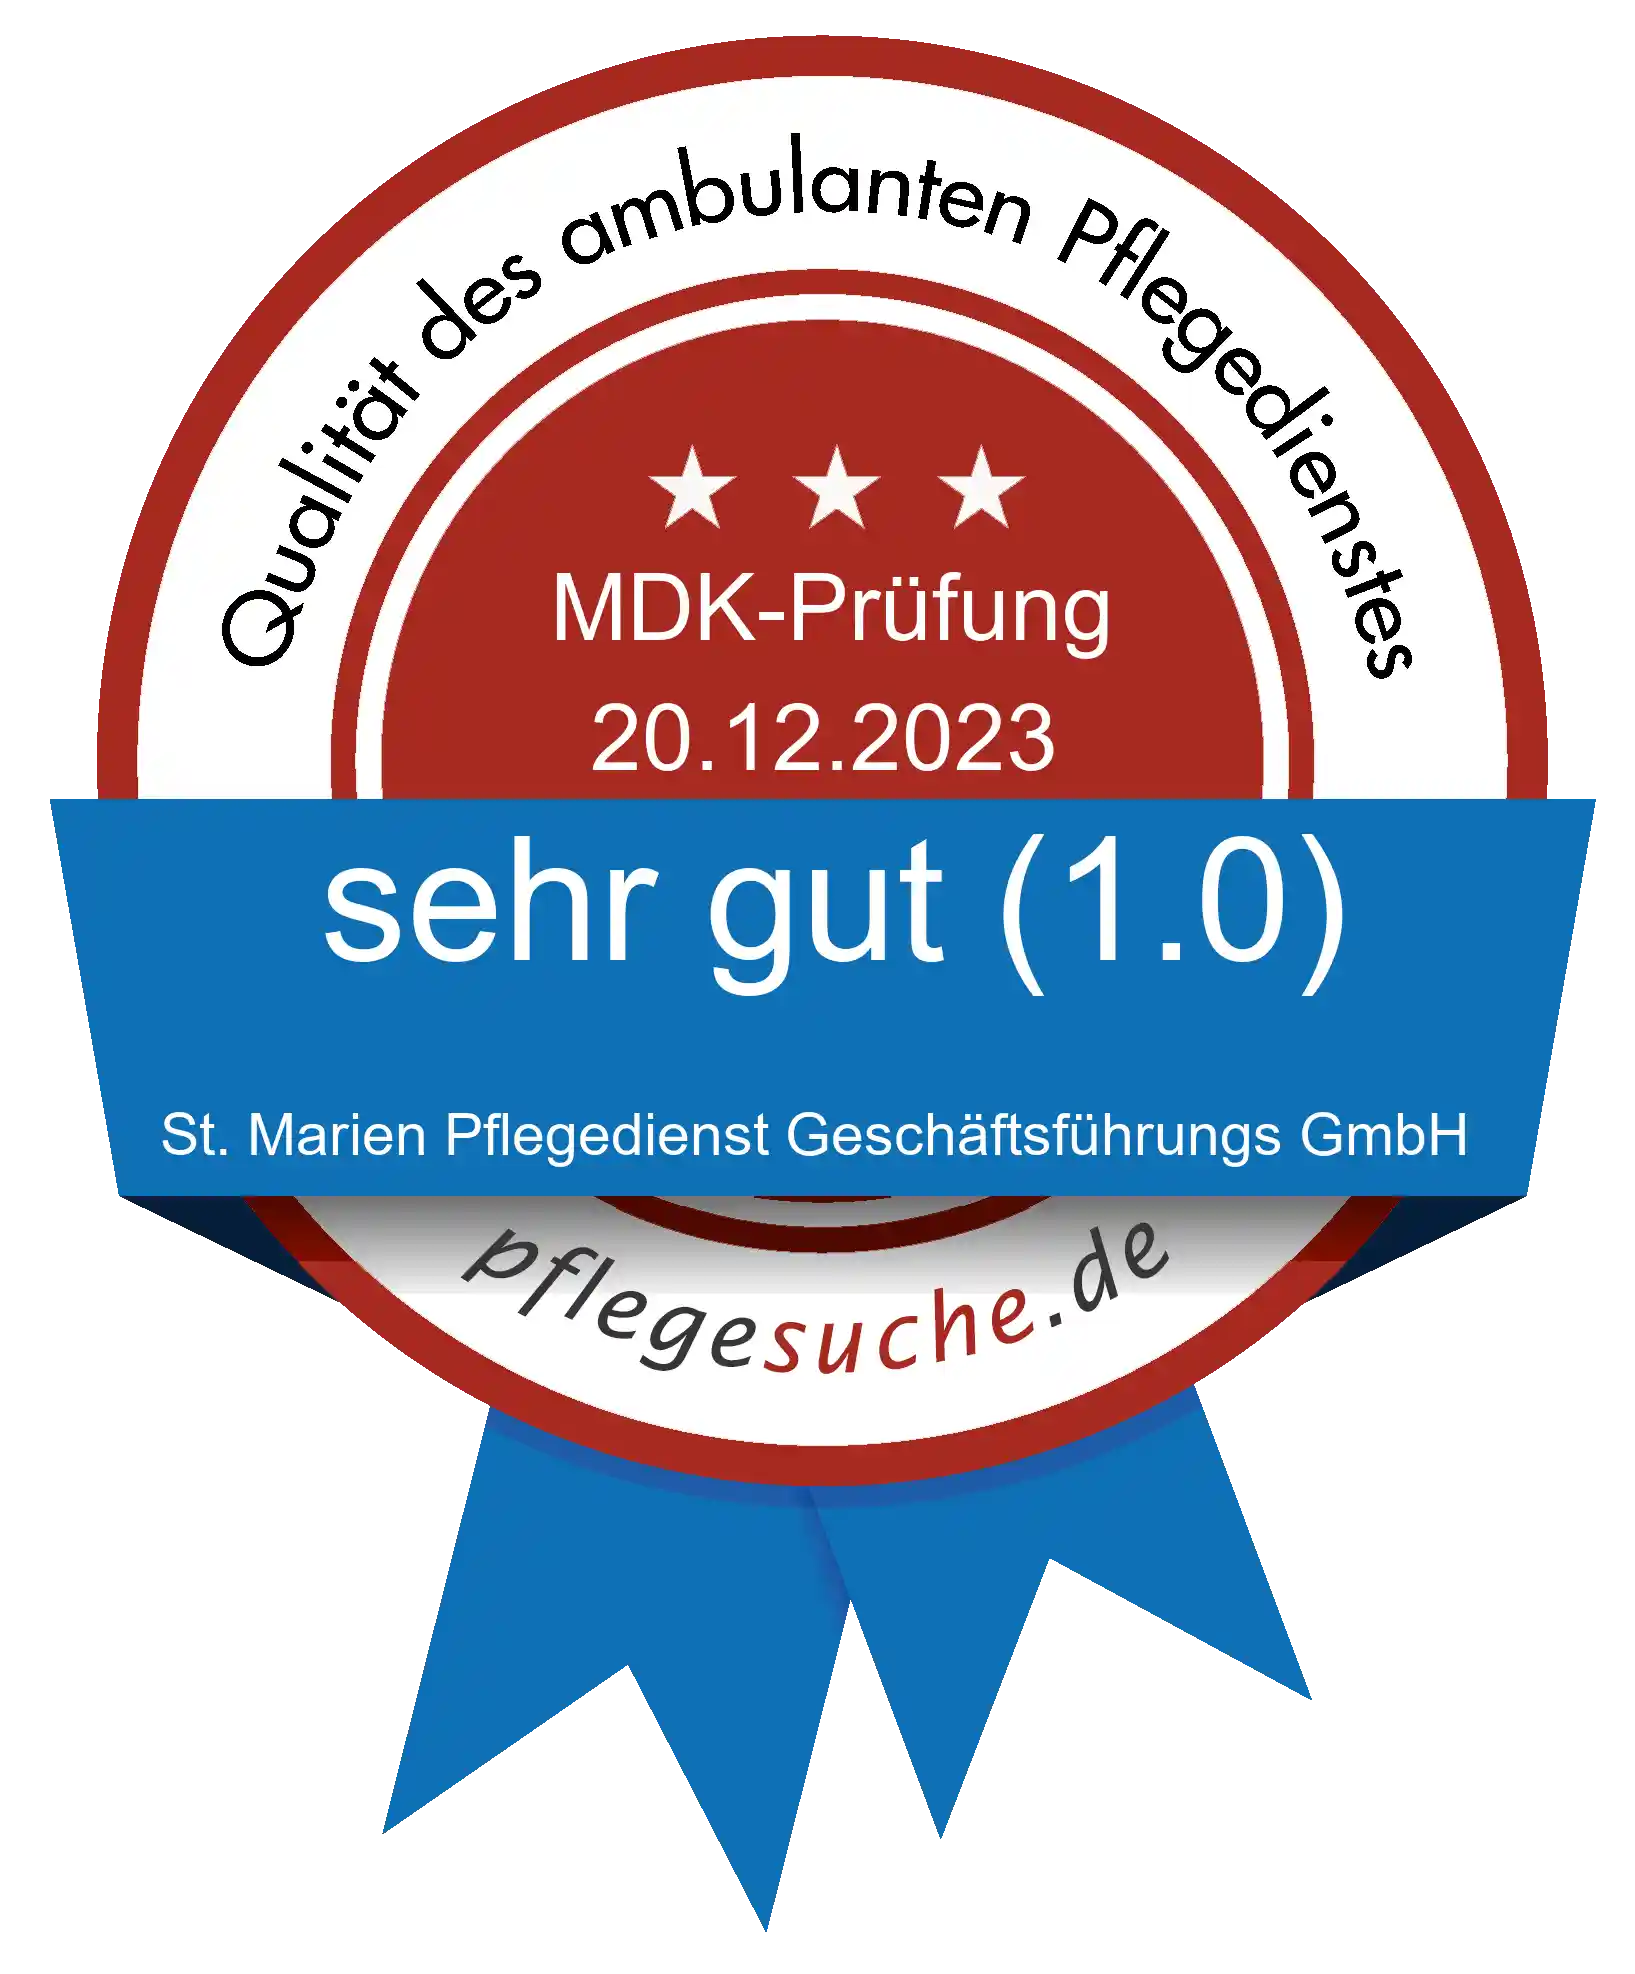 Siegel Benotung: St. Marien Pflegedienst Geschäftsführungs GmbH